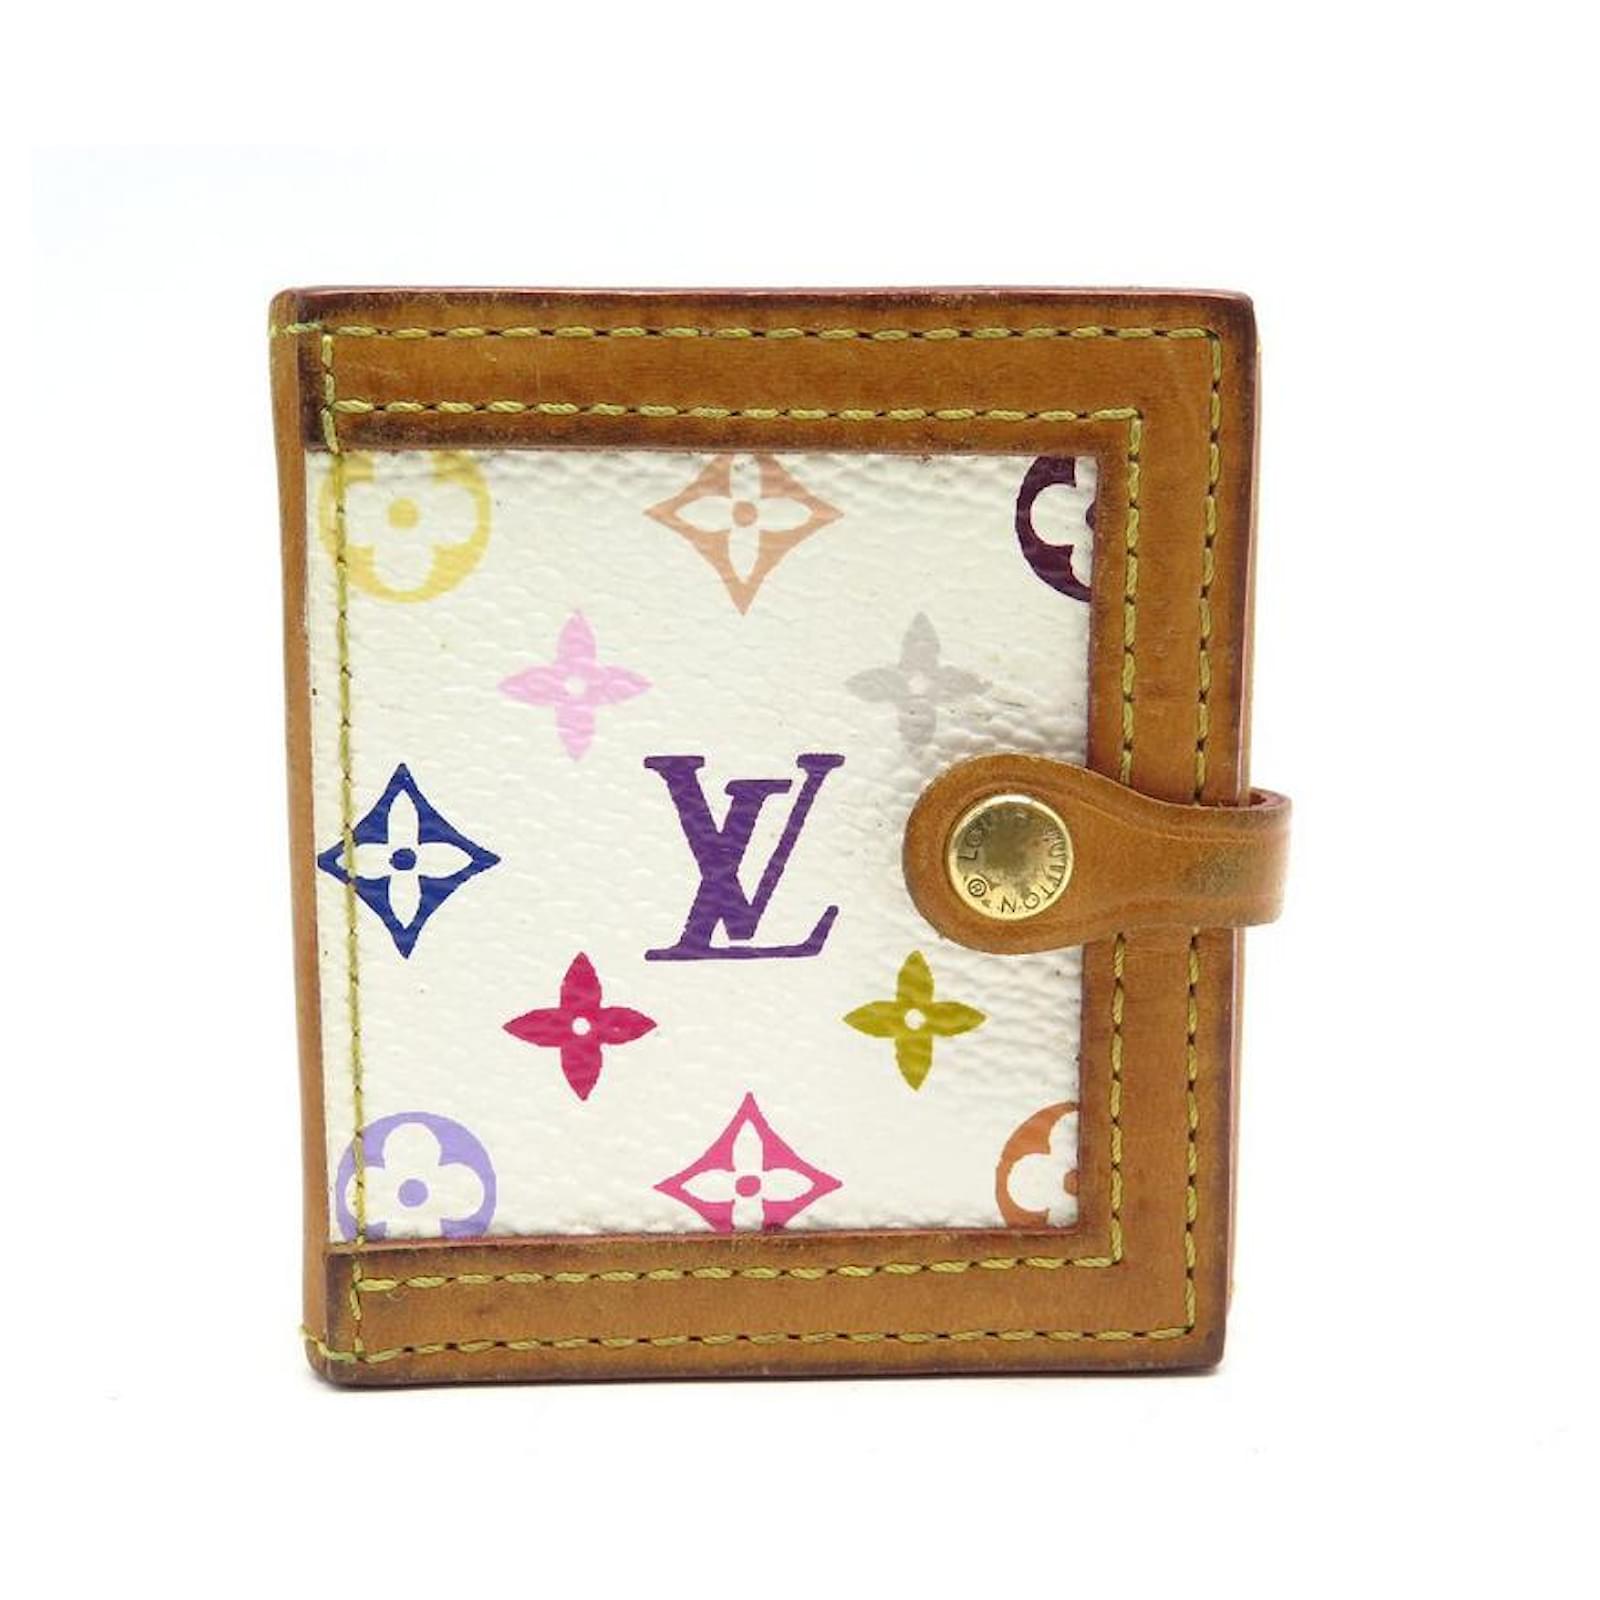 Louis Vuitton Monogram Multicolor Canvas Compact Wallet on SALE